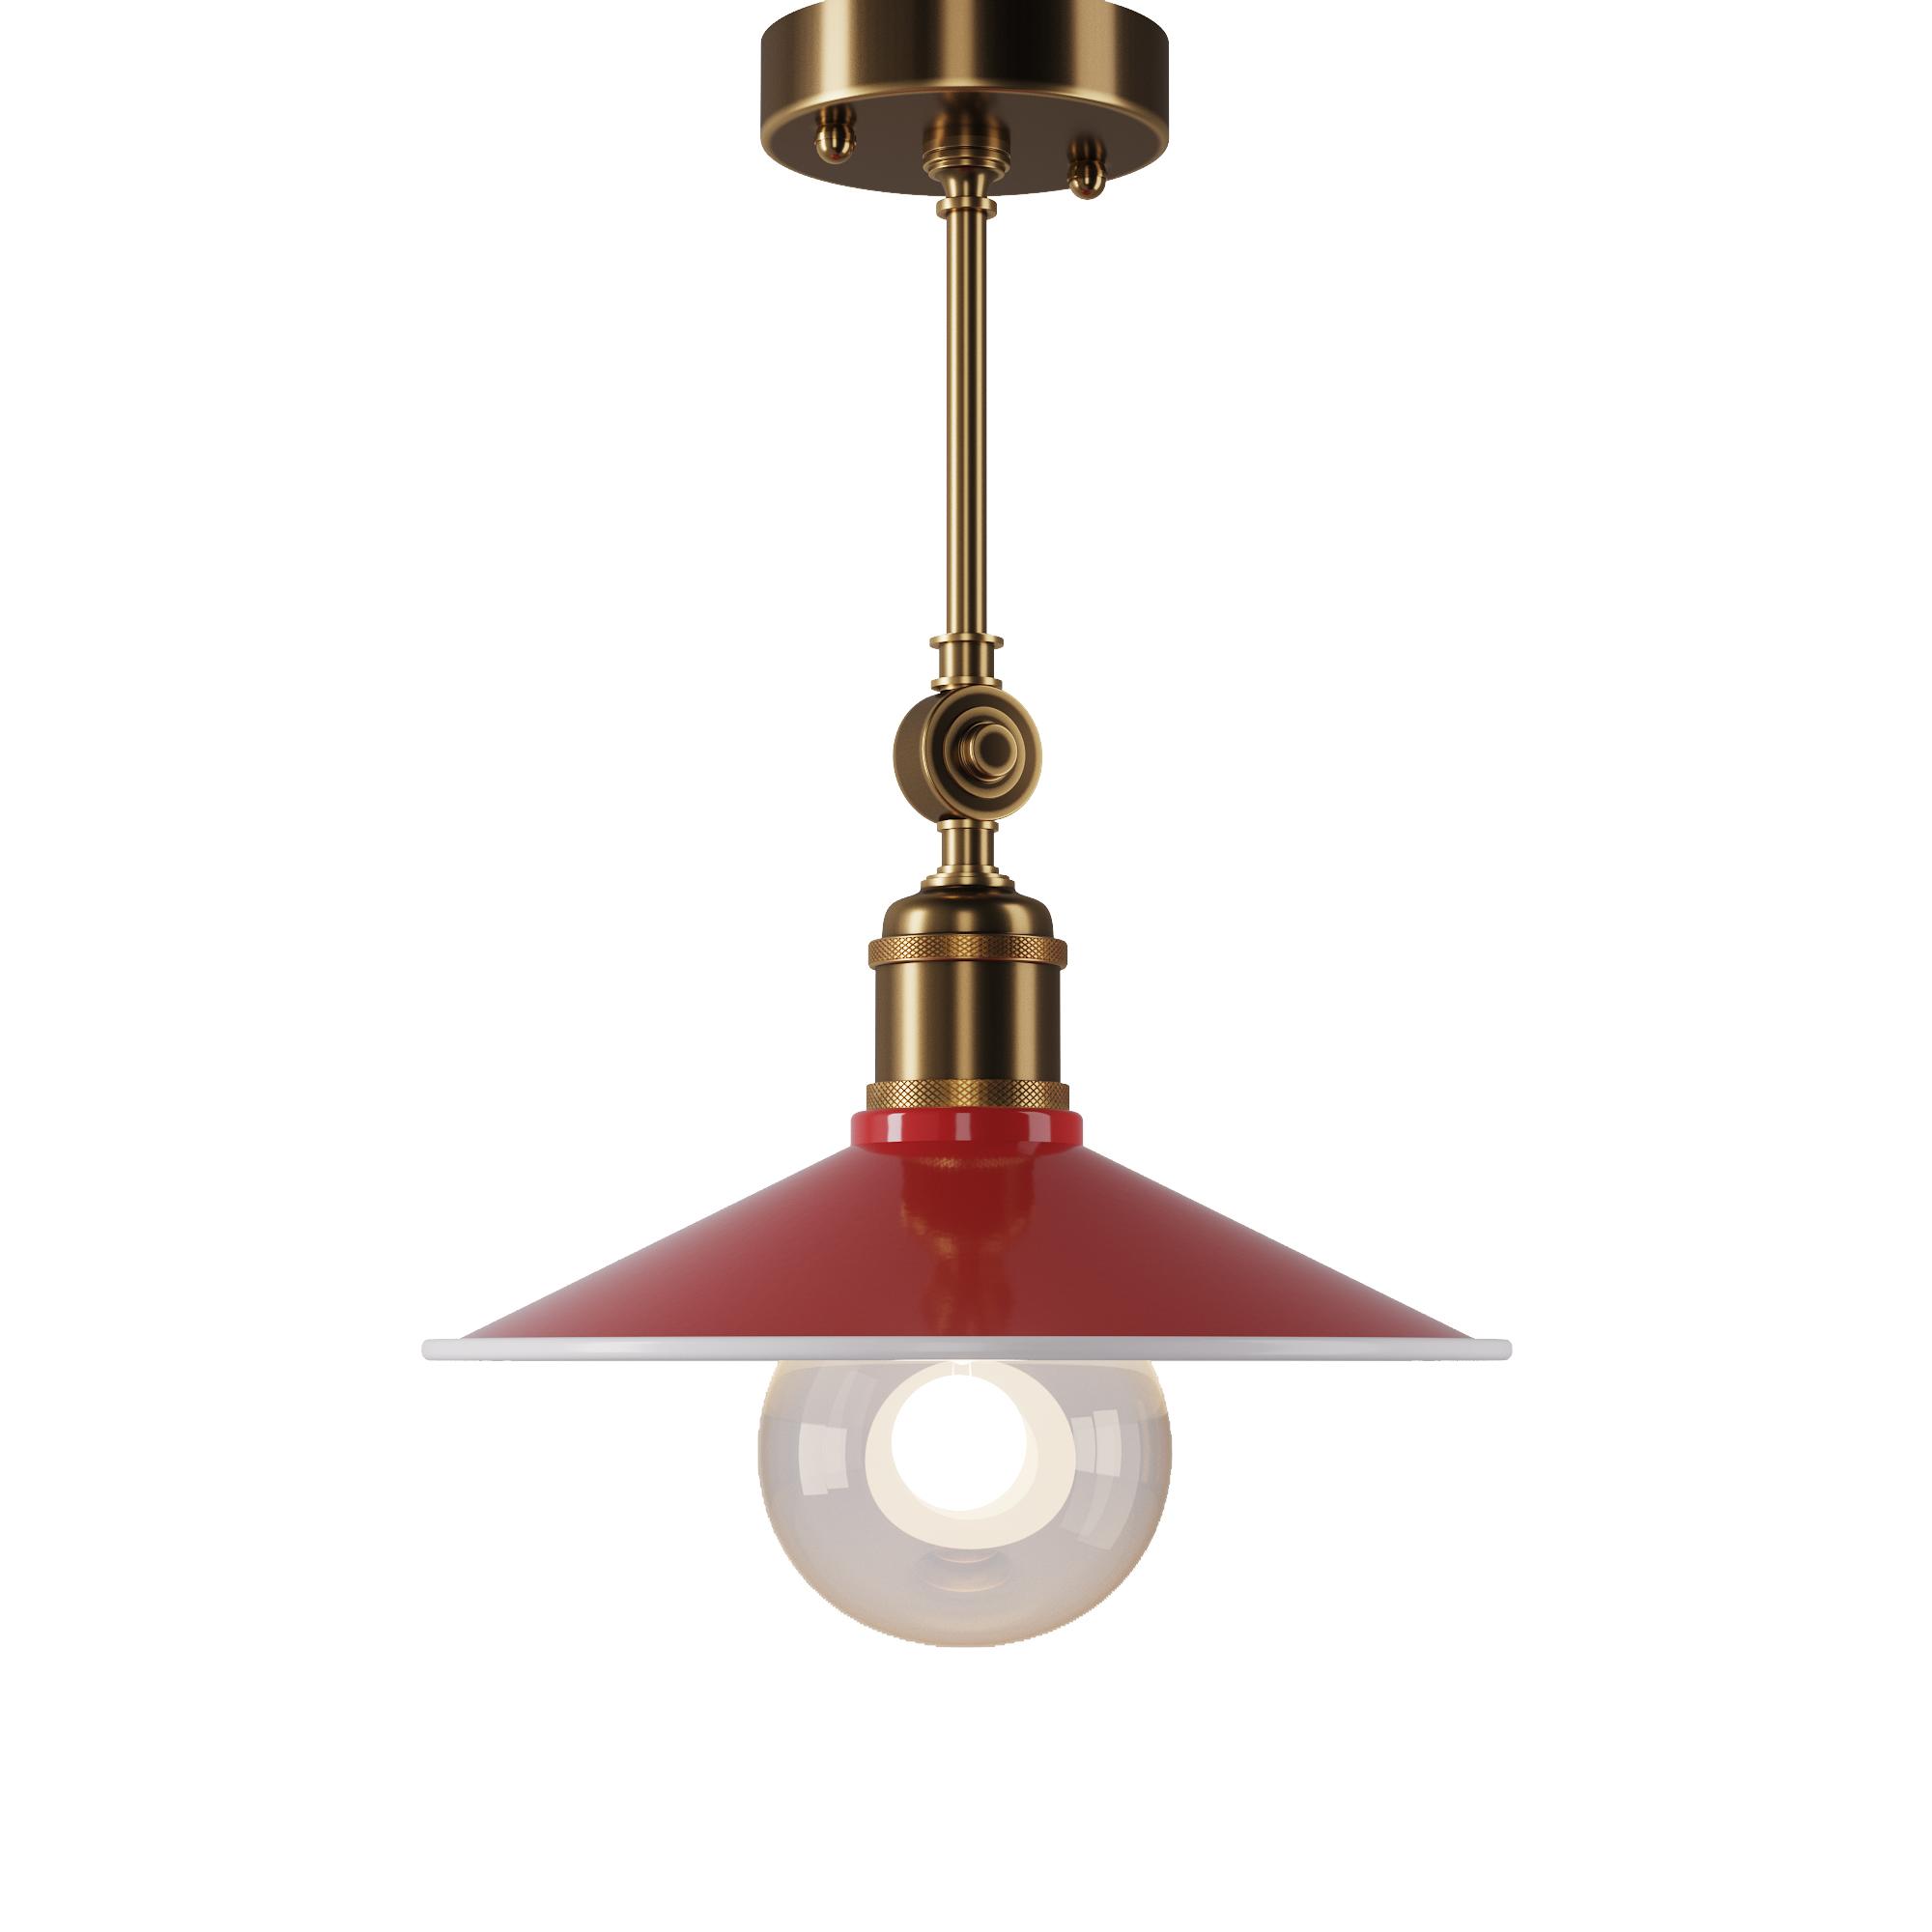 Steel lamp, SKU. 340 by Pikartlights 3d model